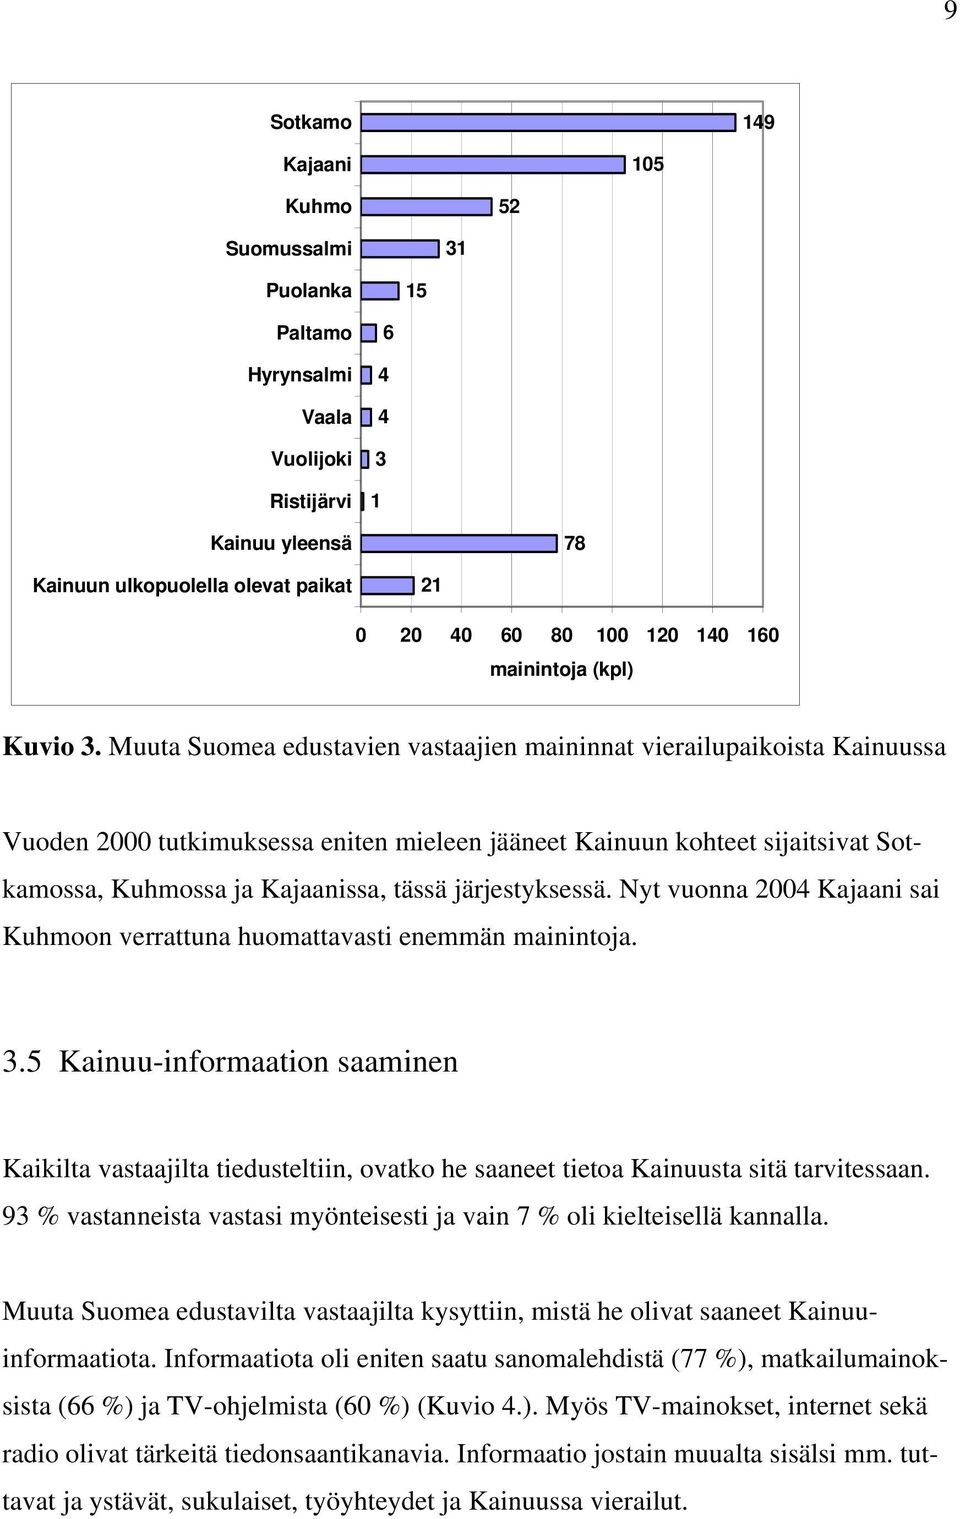 Muuta Suomea edustavien vastaajien maininnat vierailupaikoista Kainuussa Vuoden 2000 tutkimuksessa eniten mieleen jääneet Kainuun kohteet sijaitsivat Sotkamossa, Kuhmossa ja Kajaanissa, tässä